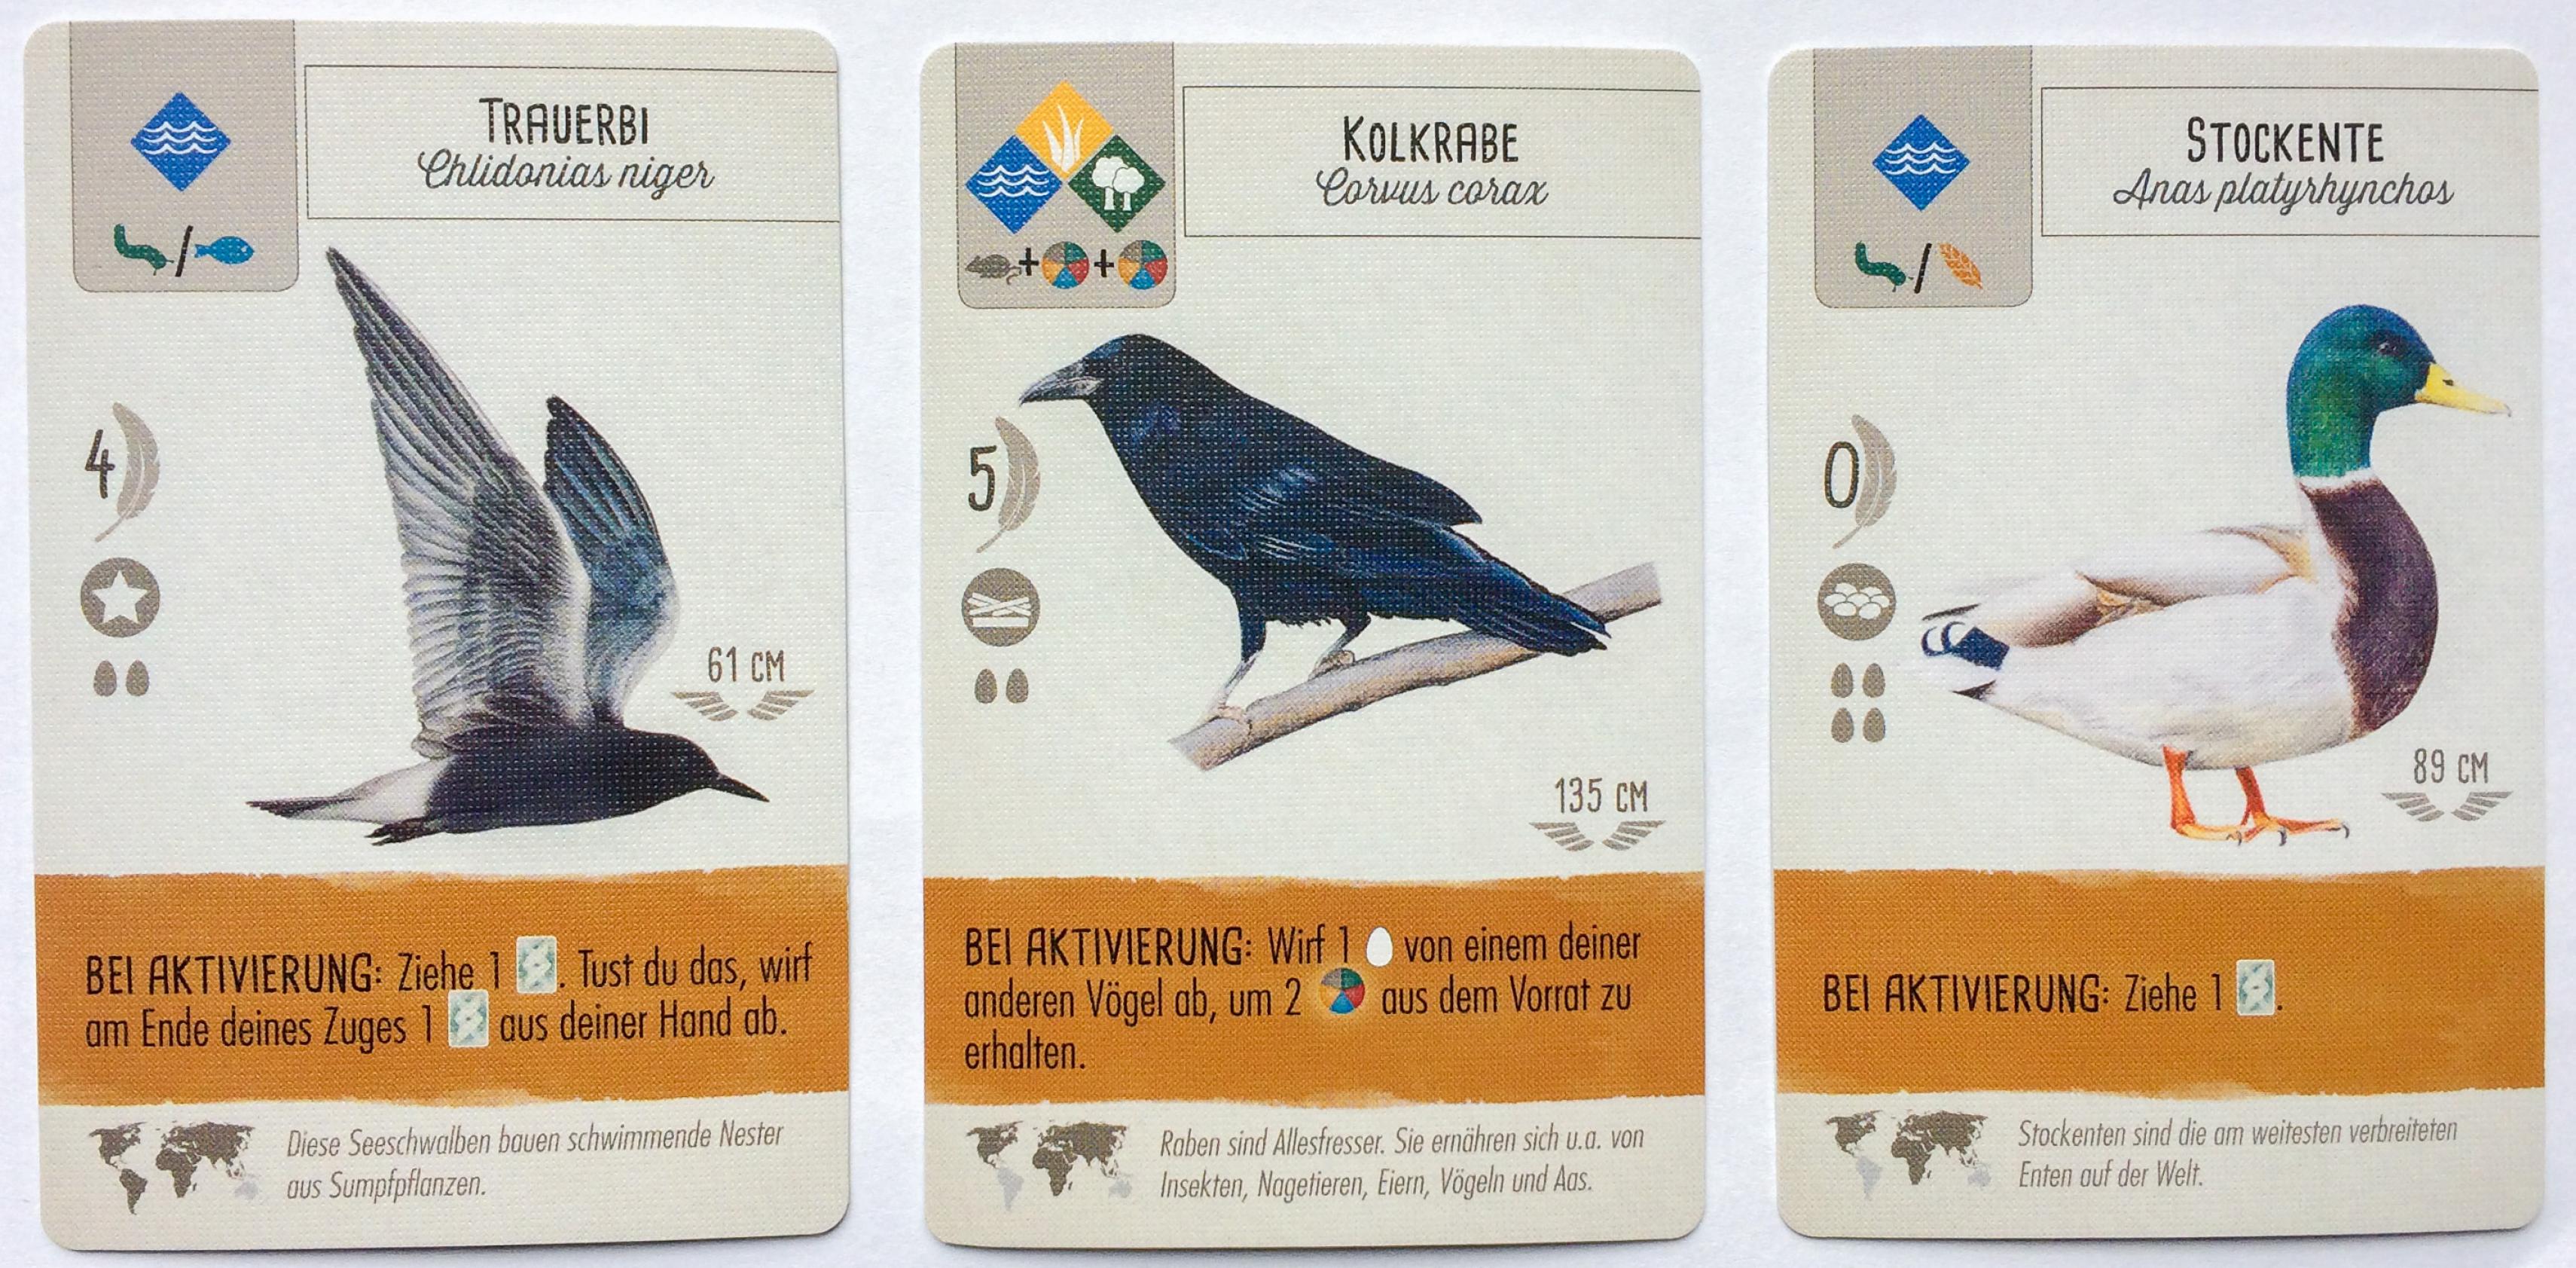 Drei Spielkarten mit Vögeln. Eine Trauerseeschwalbe unter dem Titel „Trauerbi“, ein Kolkrabe und eine Stockente.